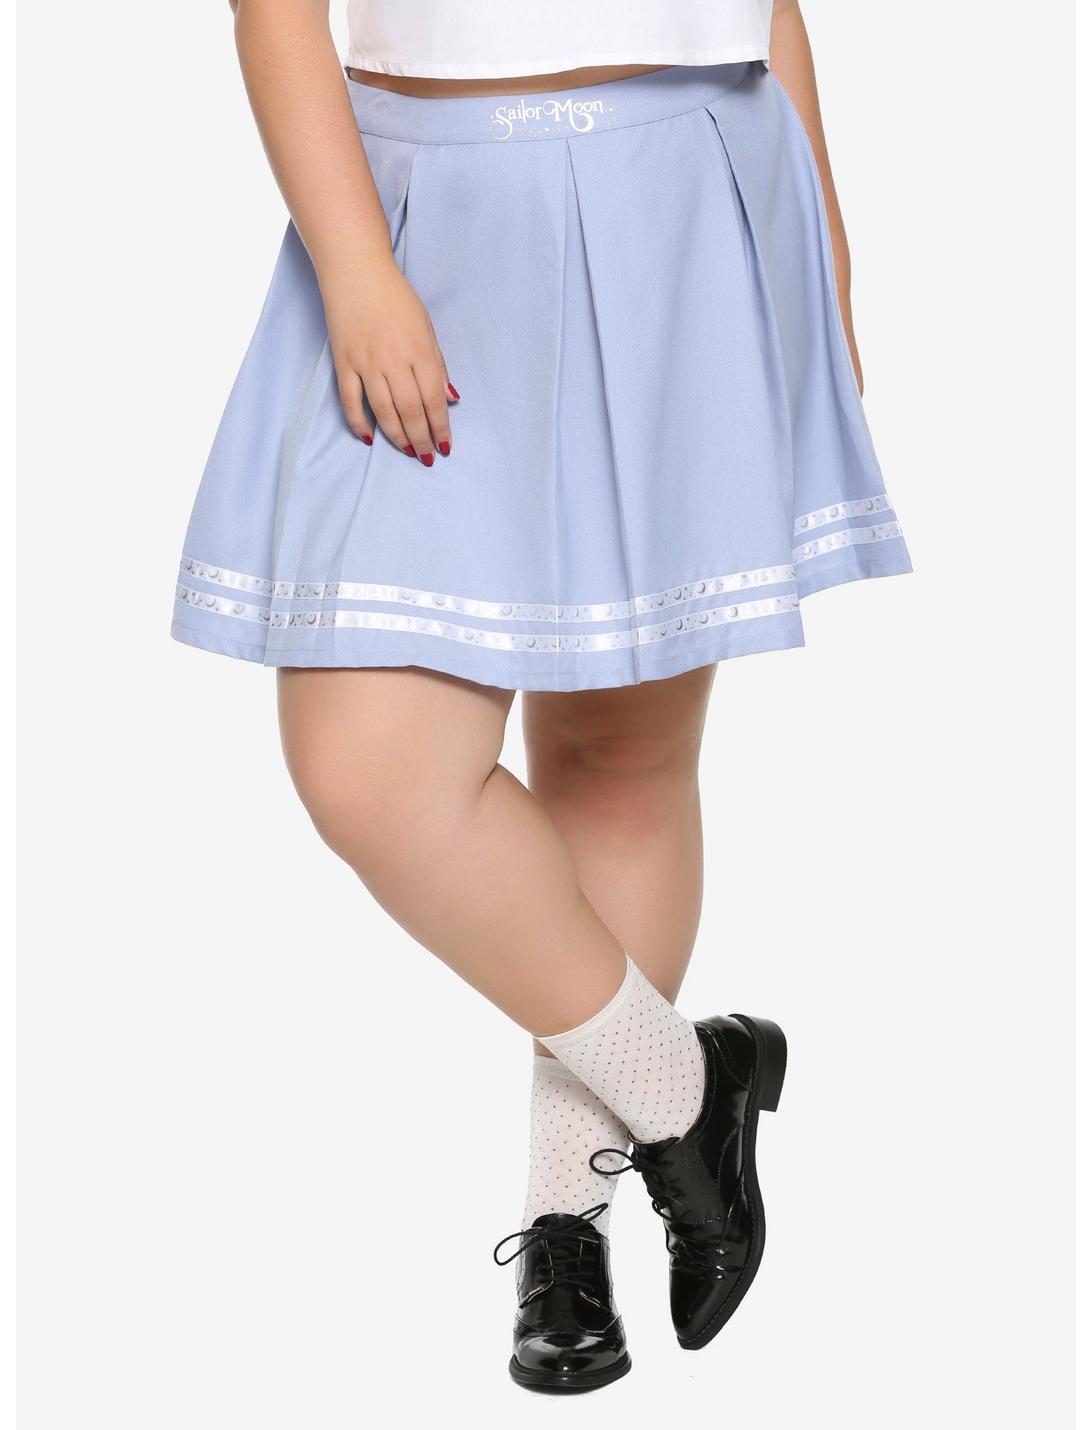 Sailor Moon Blue Uniform Skirt Plus Size Hot Topic Exclusive, NAVY, hi-res